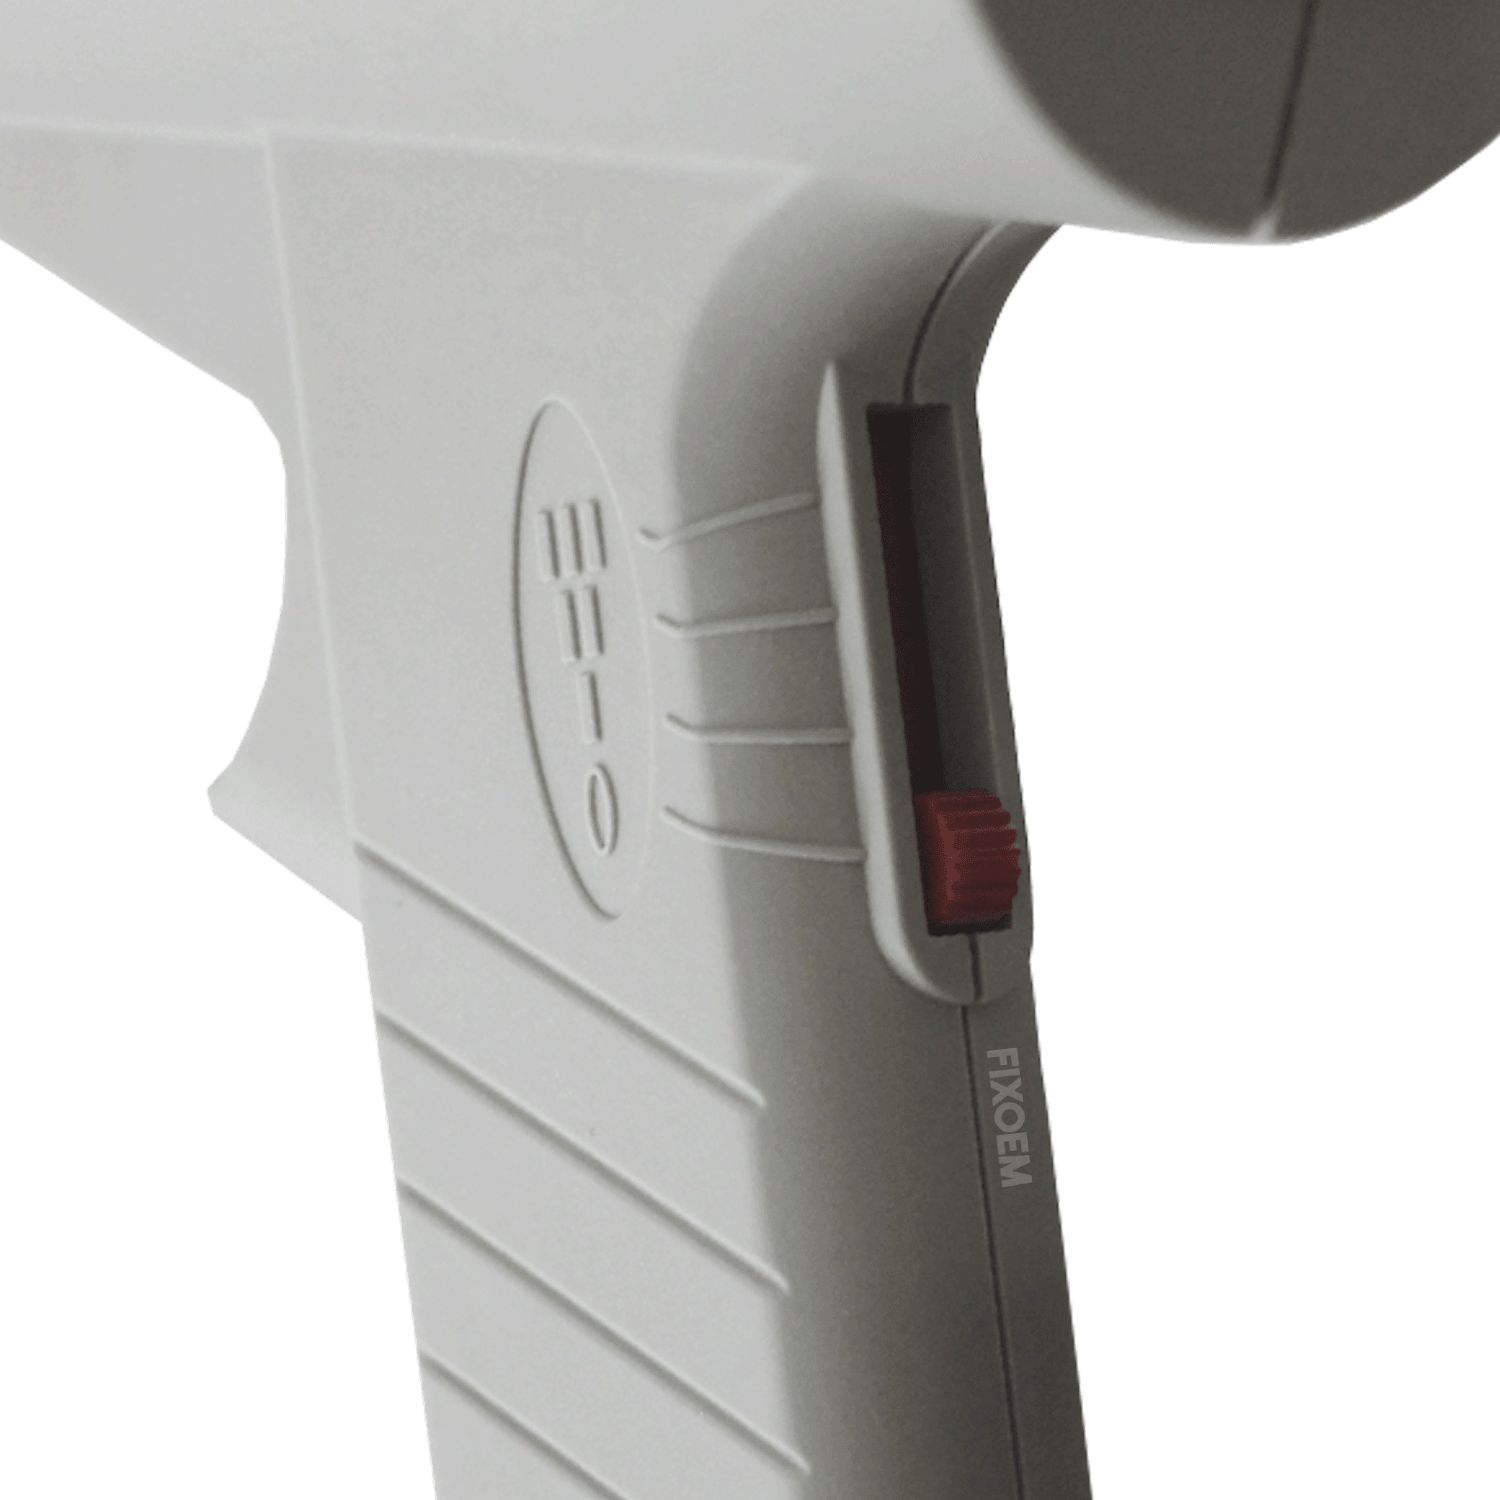 Pistola De Calor Quick 885W Industrial Regulable a solo $ 2945.00 Refaccion y puestos celulares, refurbish y microelectronica.- FixOEM